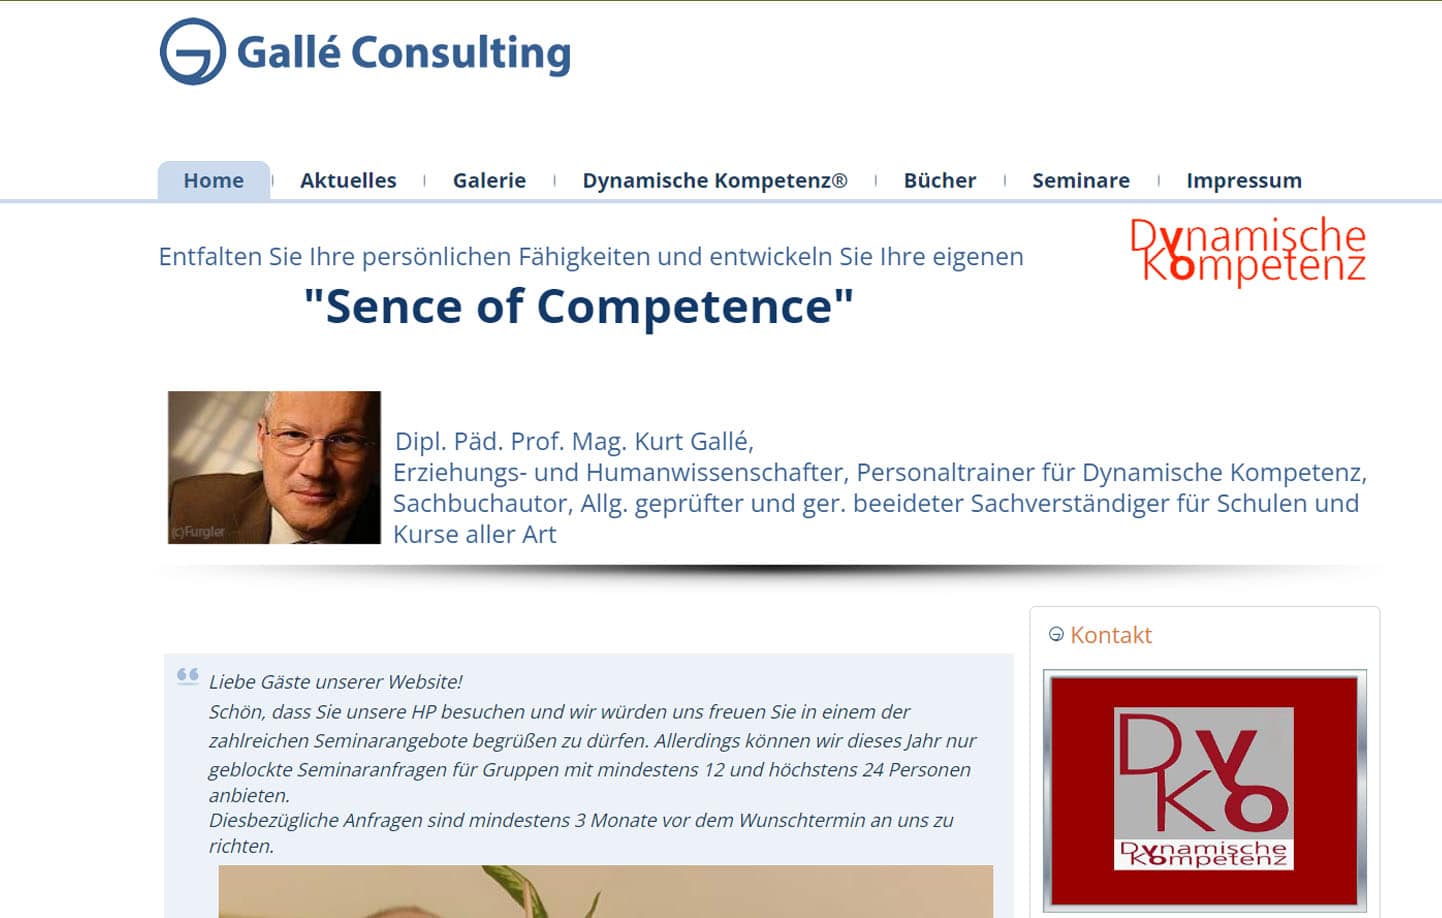 Prof. Mag. Kurt Galle Graz: Galle Consulting